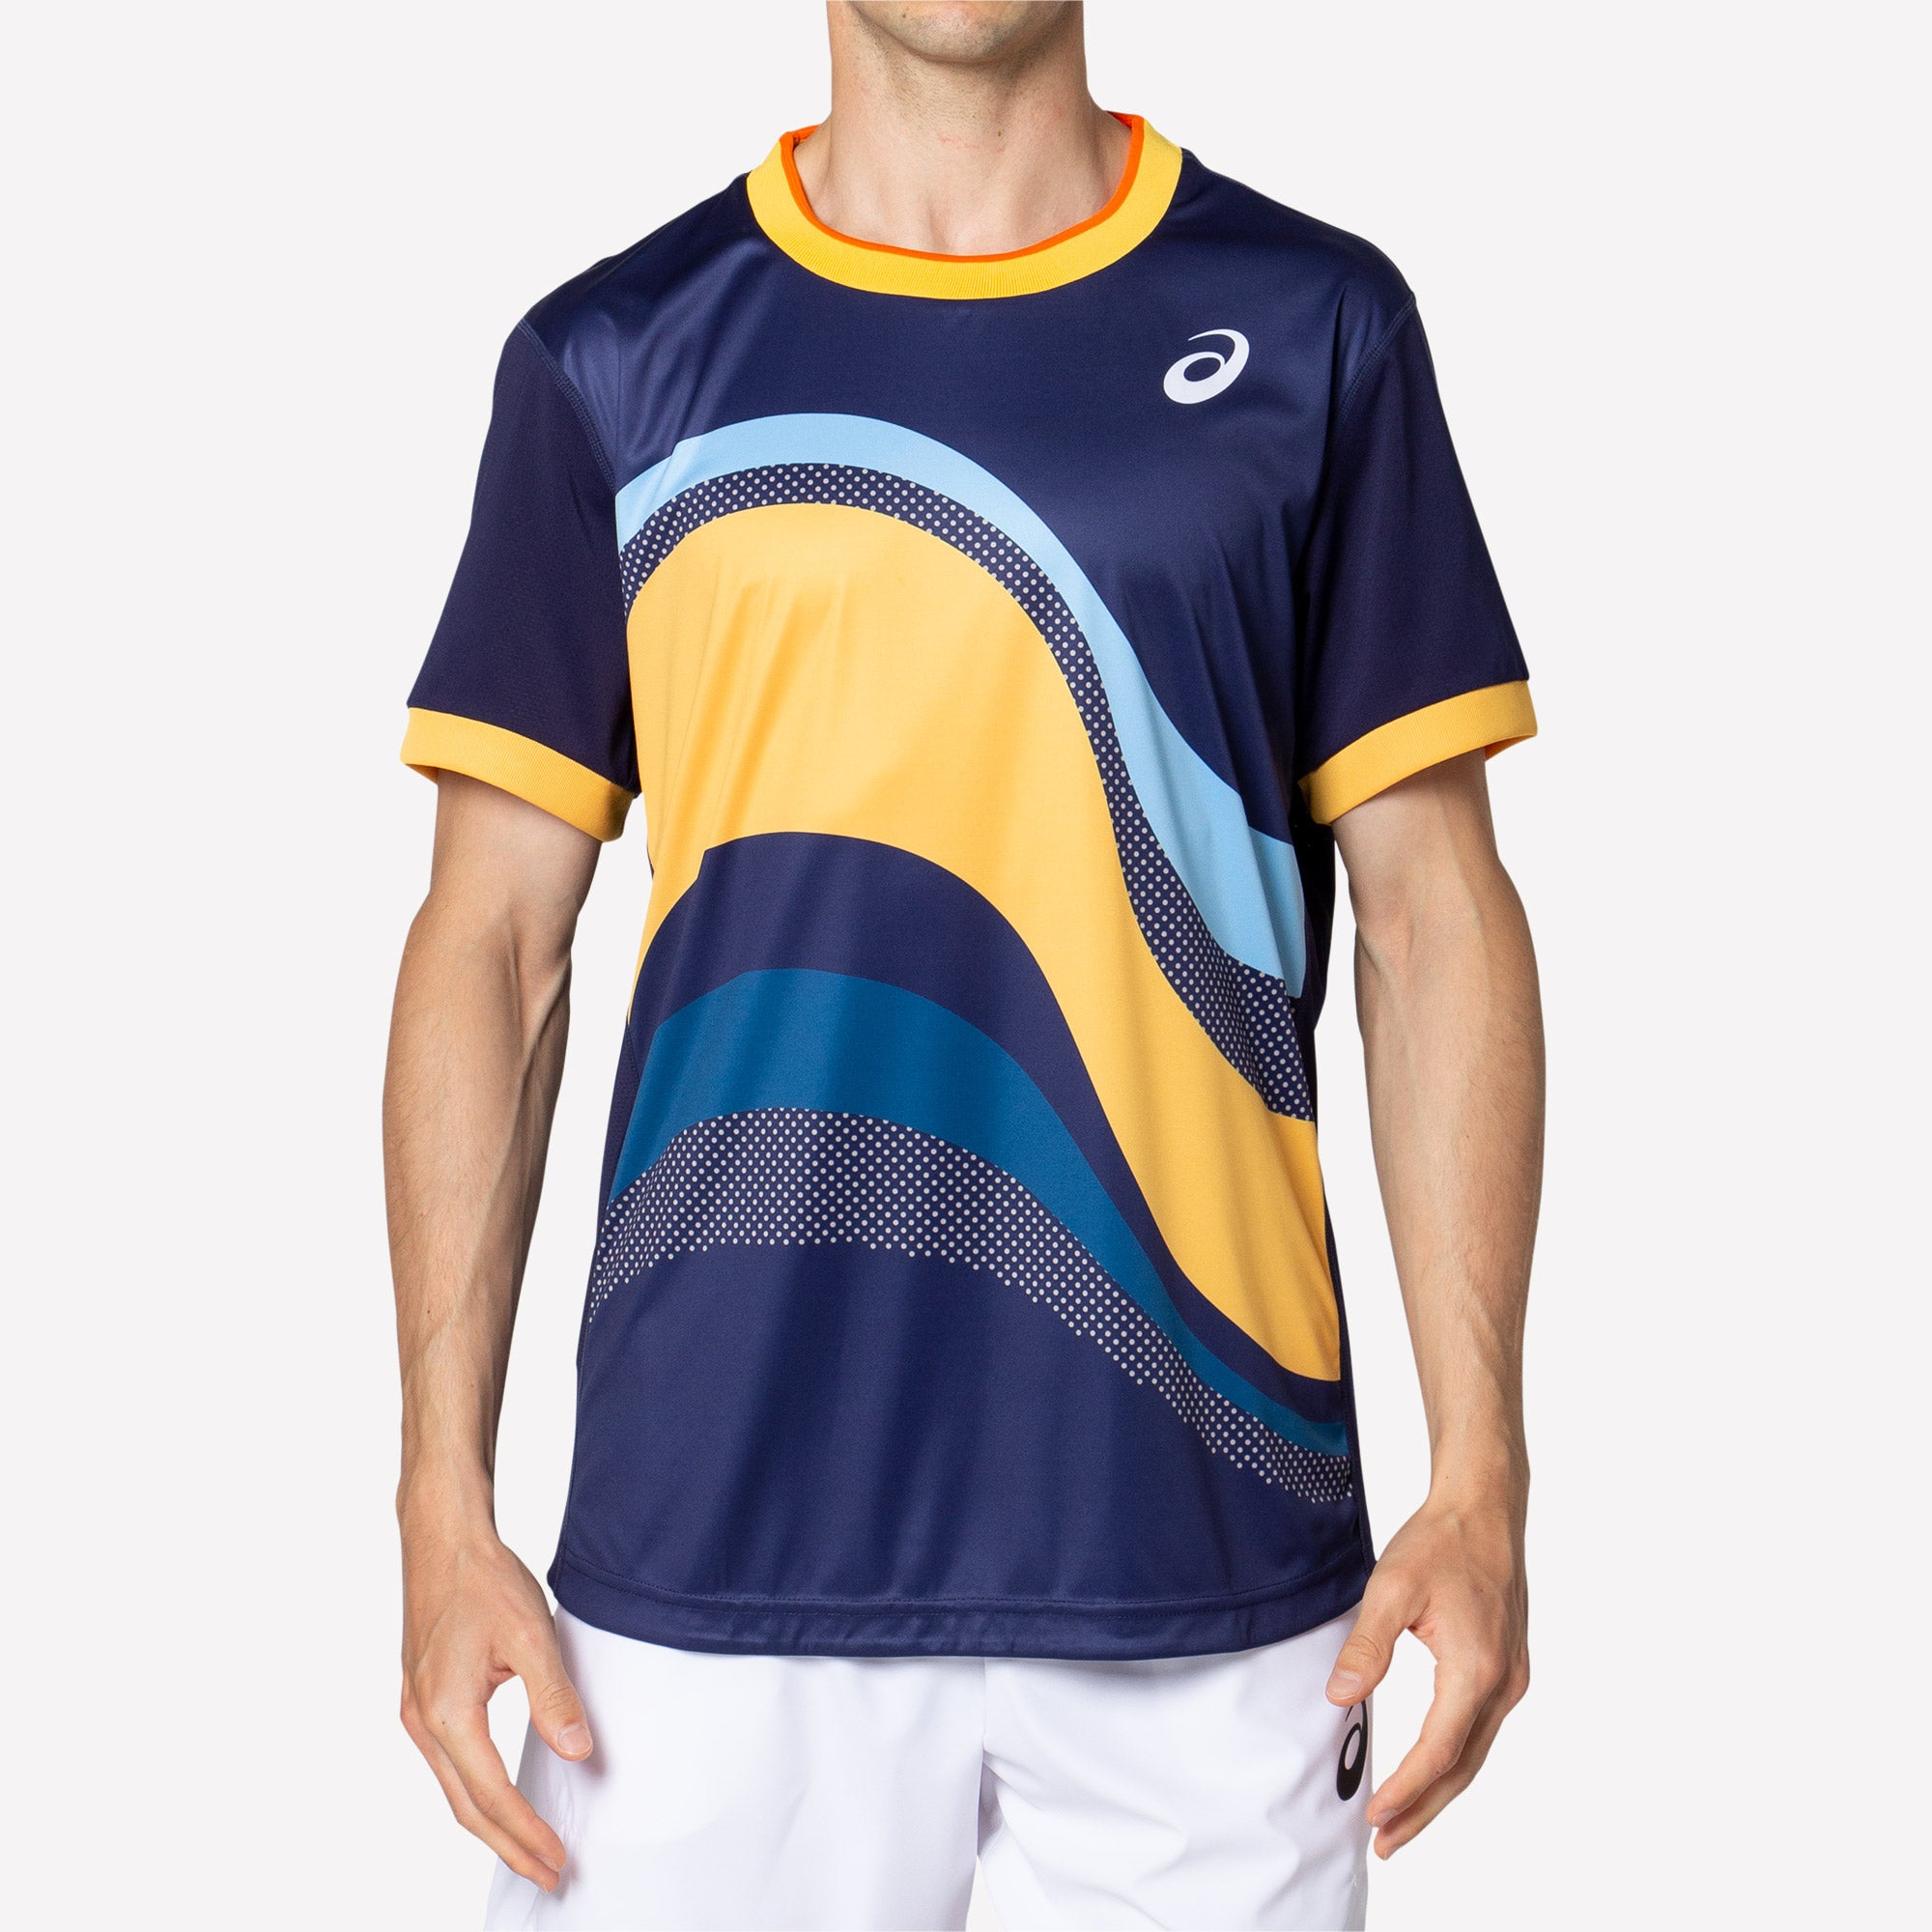 ASICS Match Men's Graphic Print Tennis Shirt Blue (4)